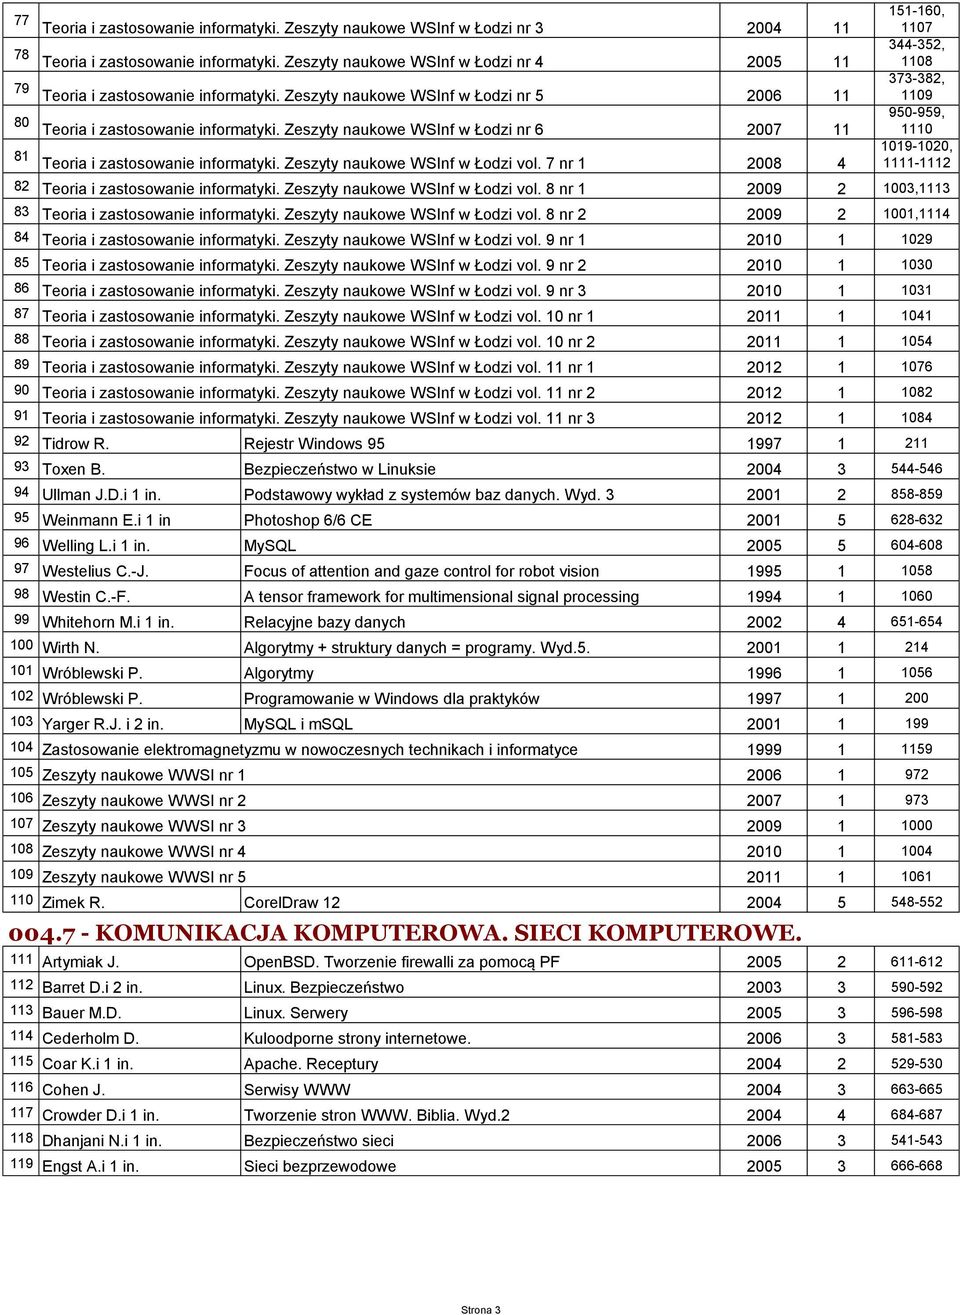 Zeszyty naukowe WSInf w Łodzi nr 6 2007 11 950-959, 1110 81 Teoria i zastosowanie informatyki. Zeszyty naukowe WSInf w Łodzi vol.